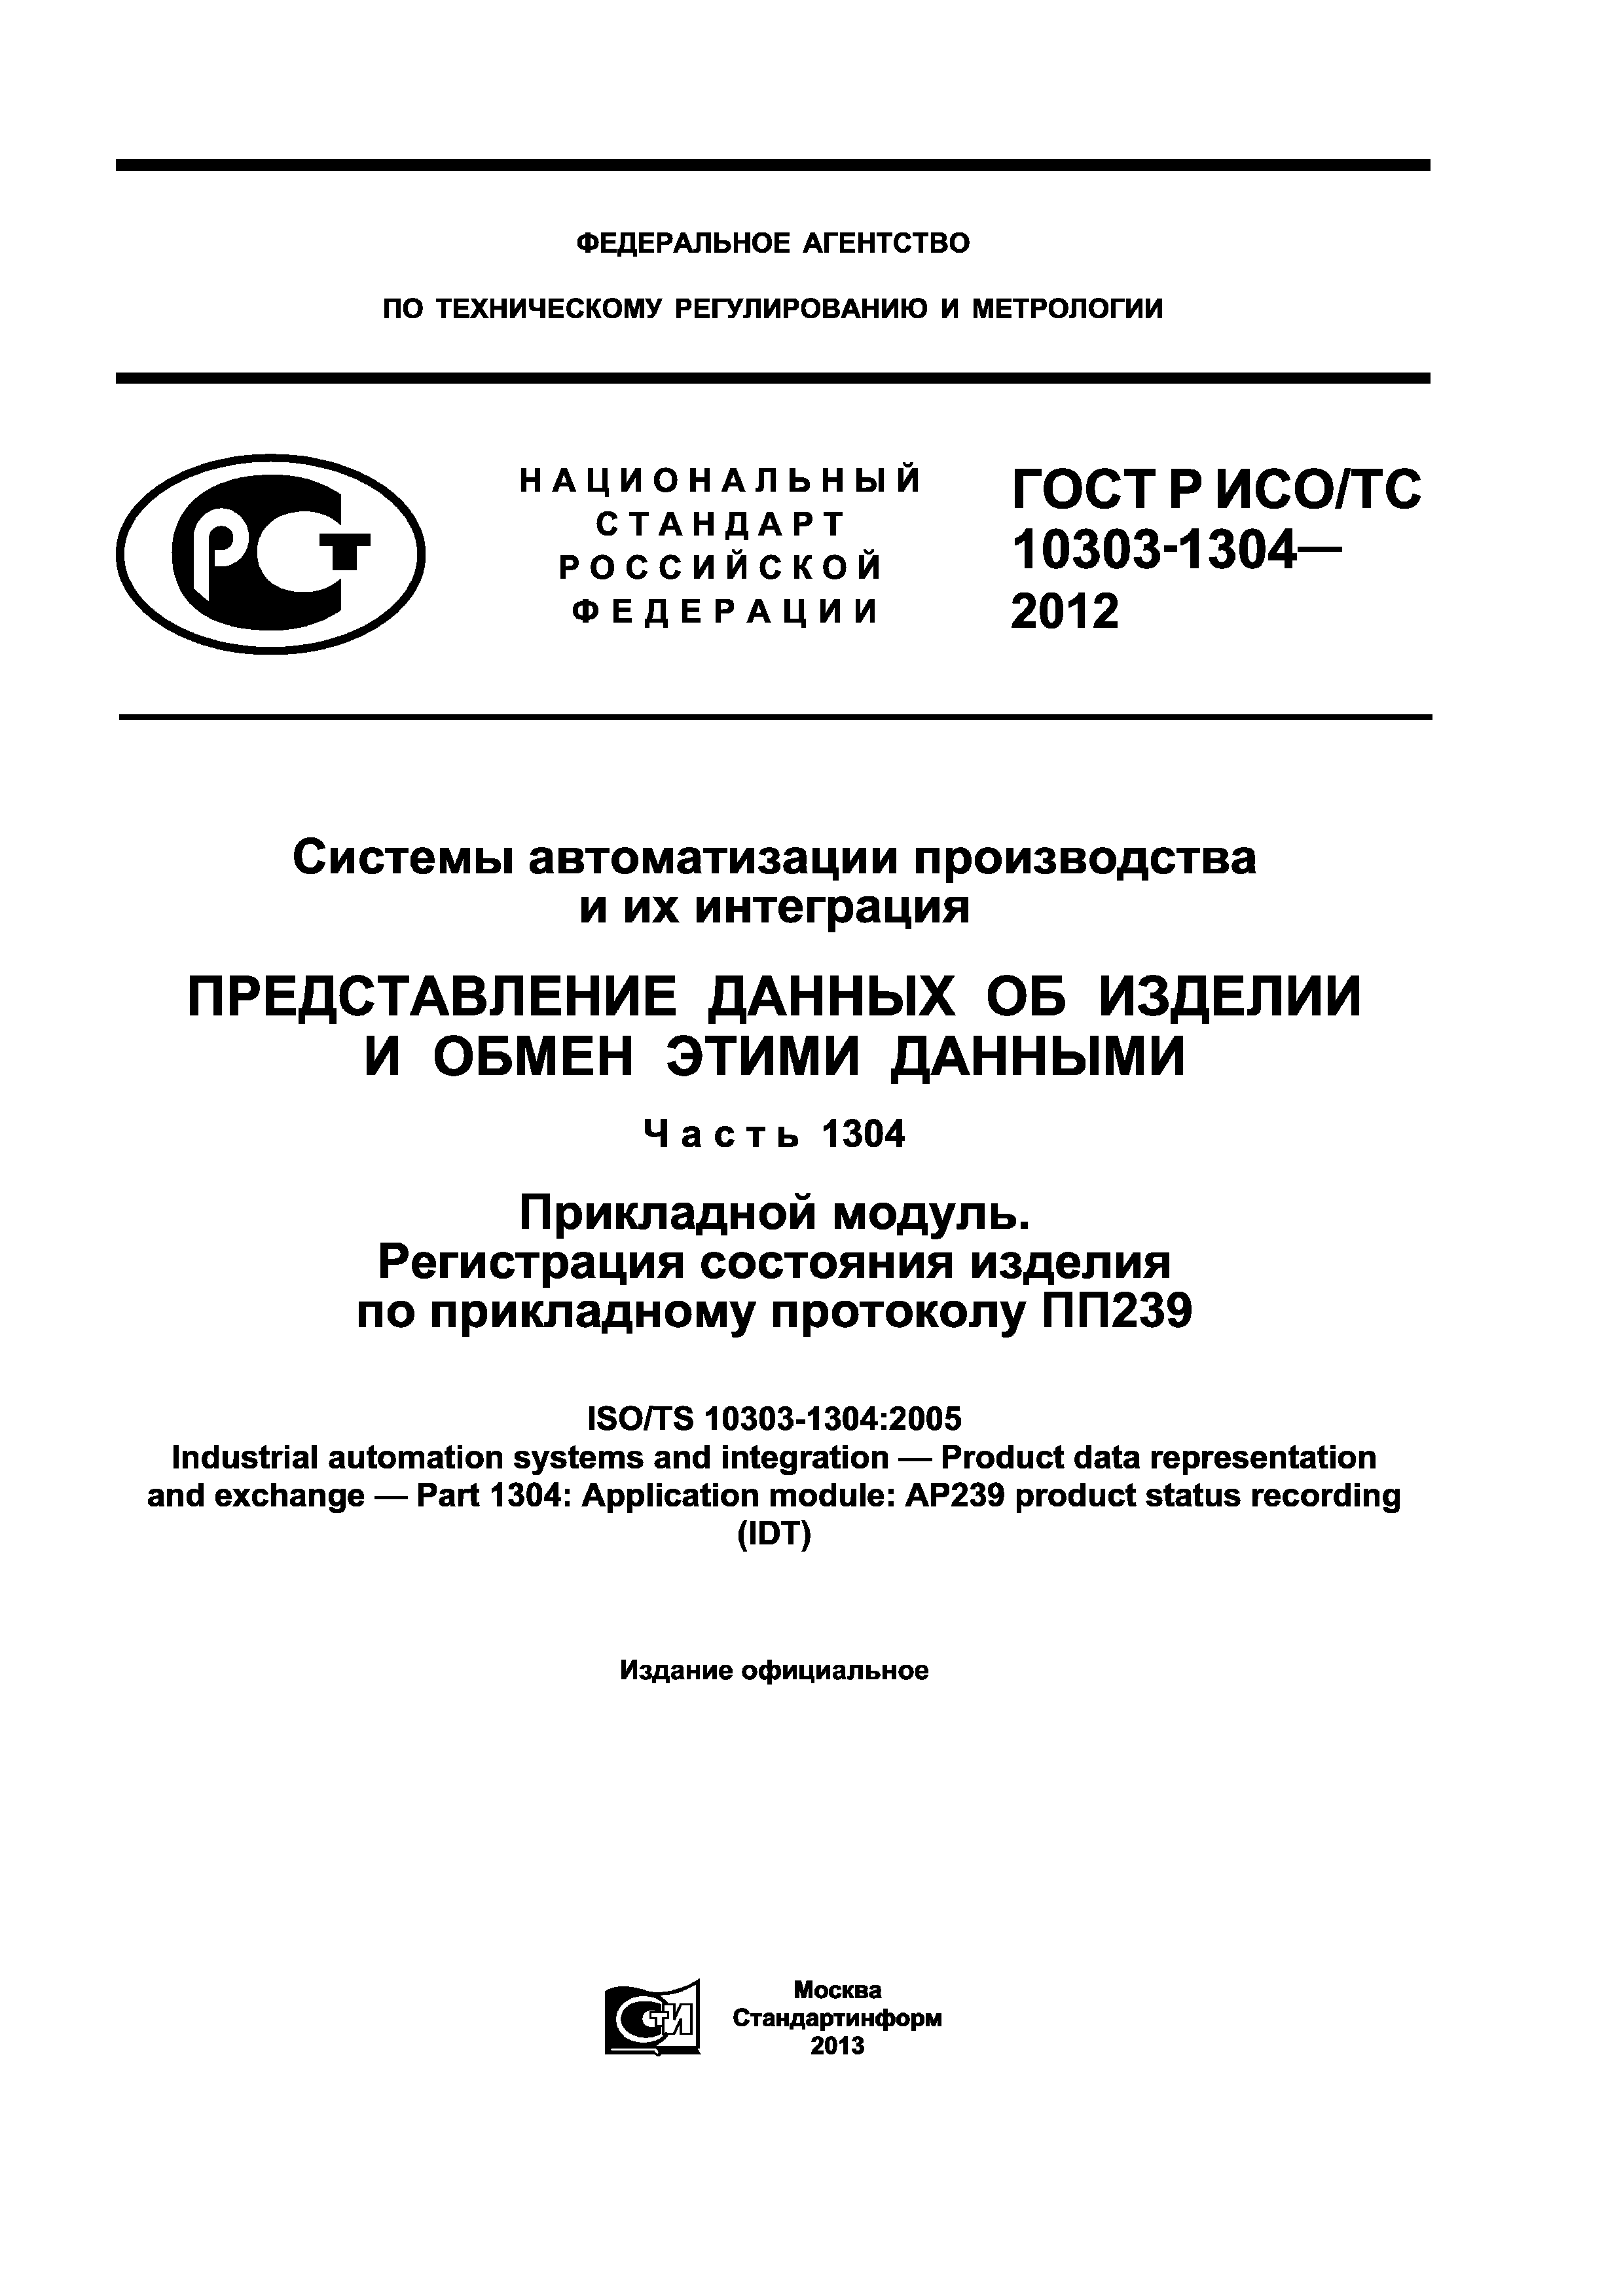 ГОСТ Р ИСО/ТС 10303-1304-2012